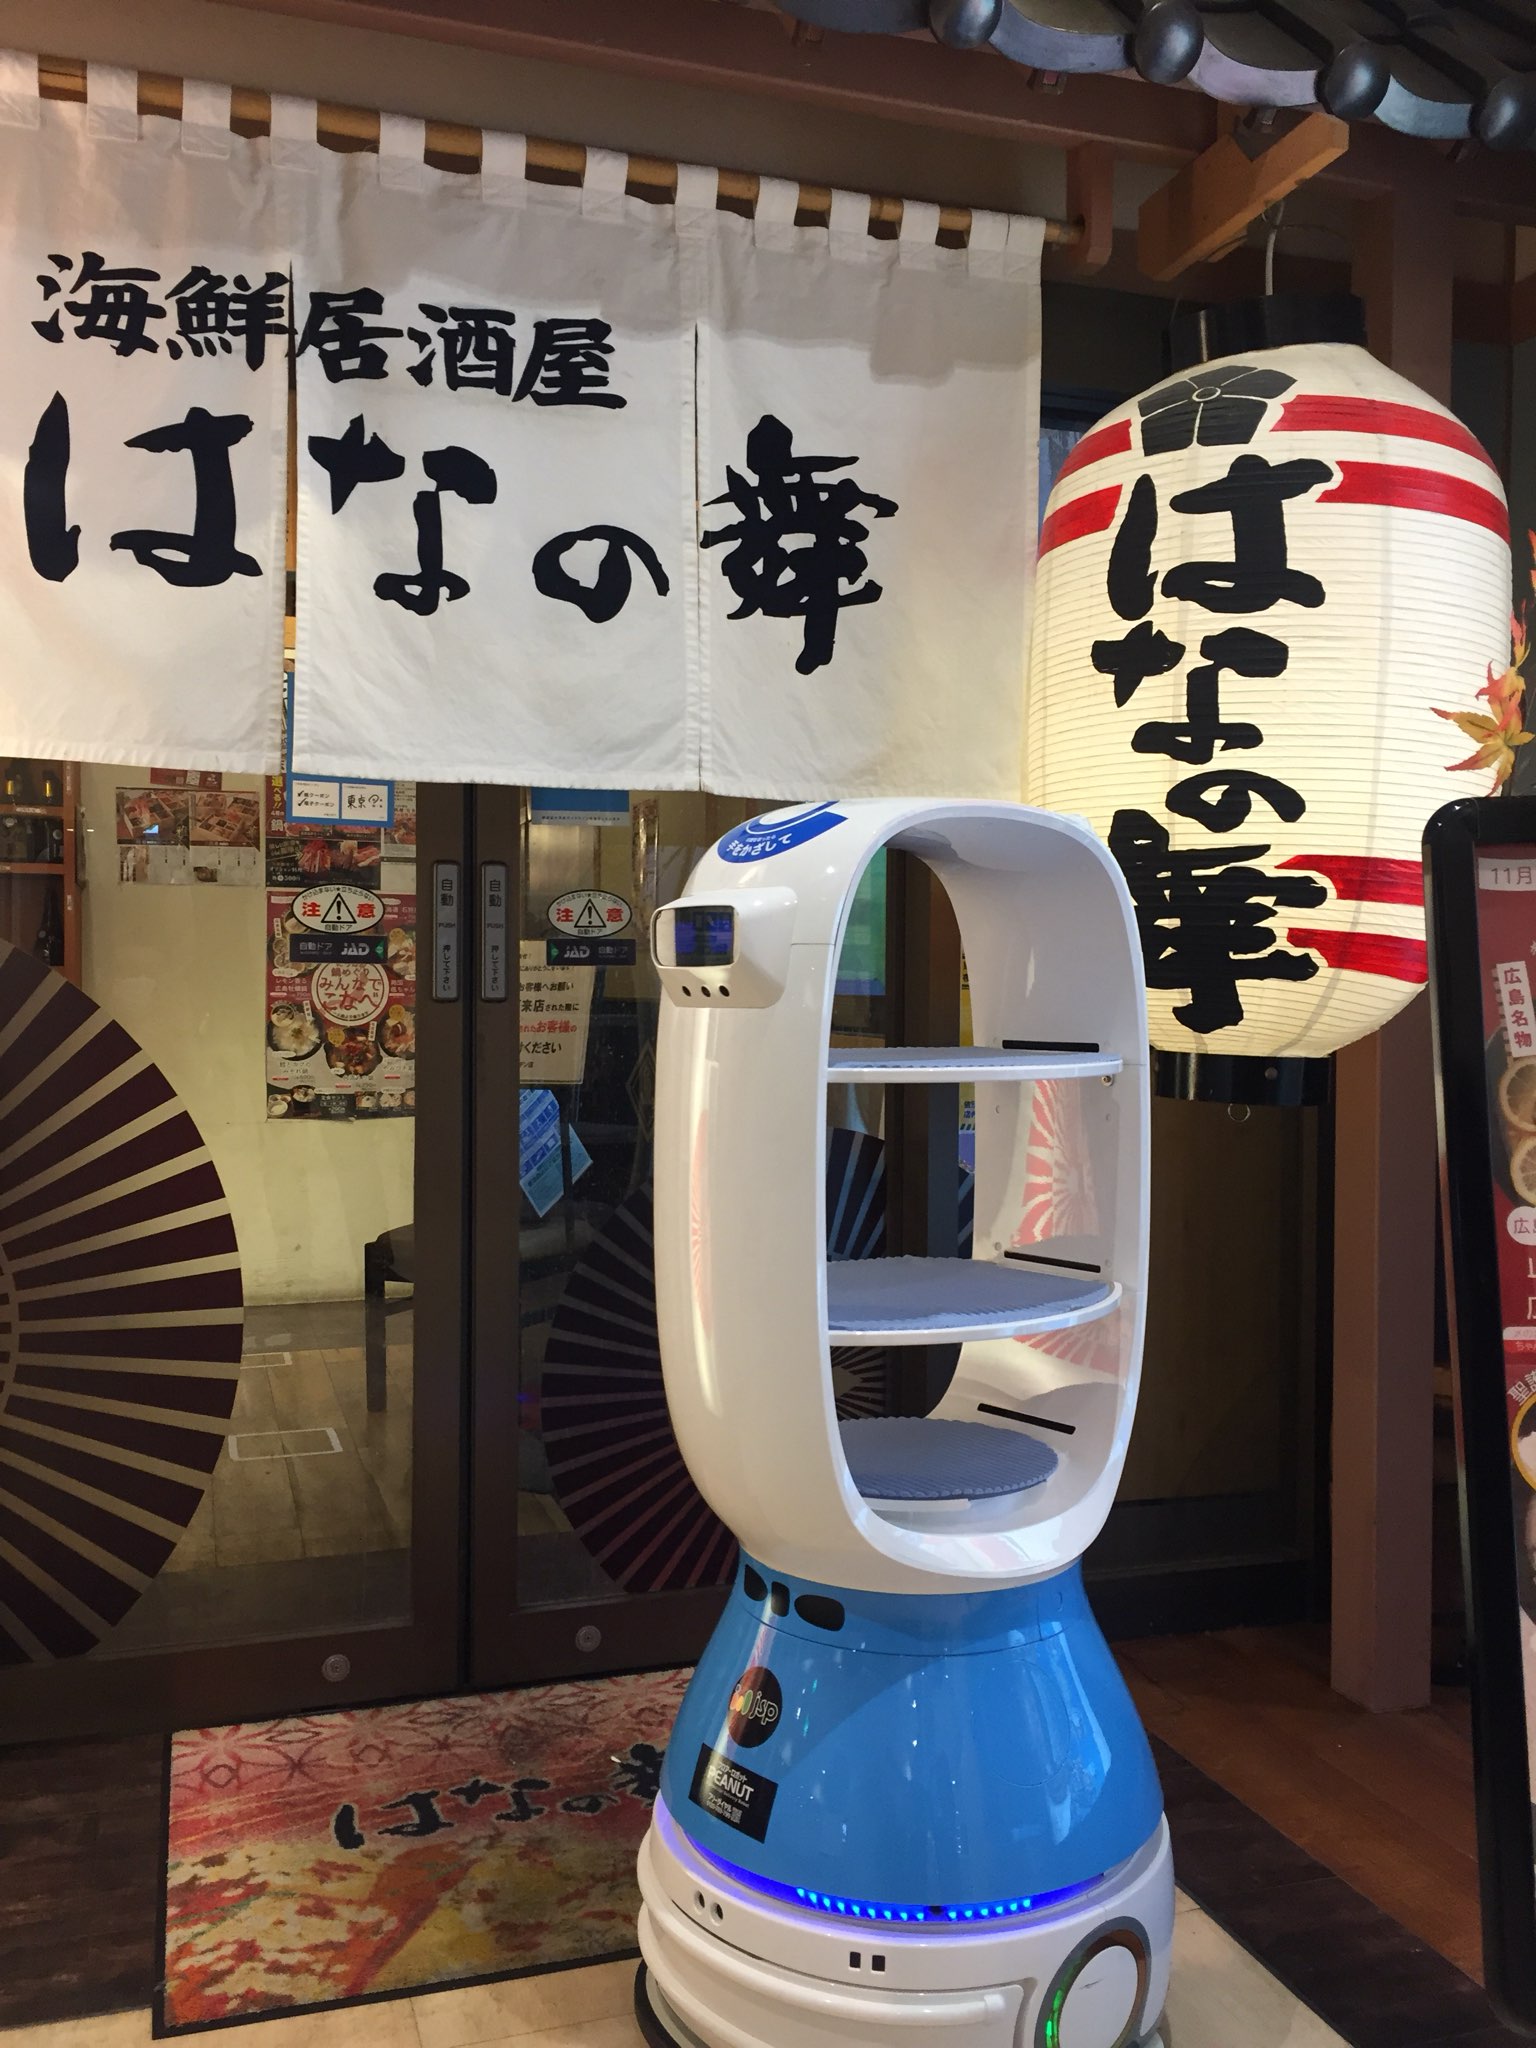 ただいま名前募集中 はなの舞 阪急大井町ガーデン店に配膳ロボット Peanut を導入 チムニー株式会社のプレスリリース